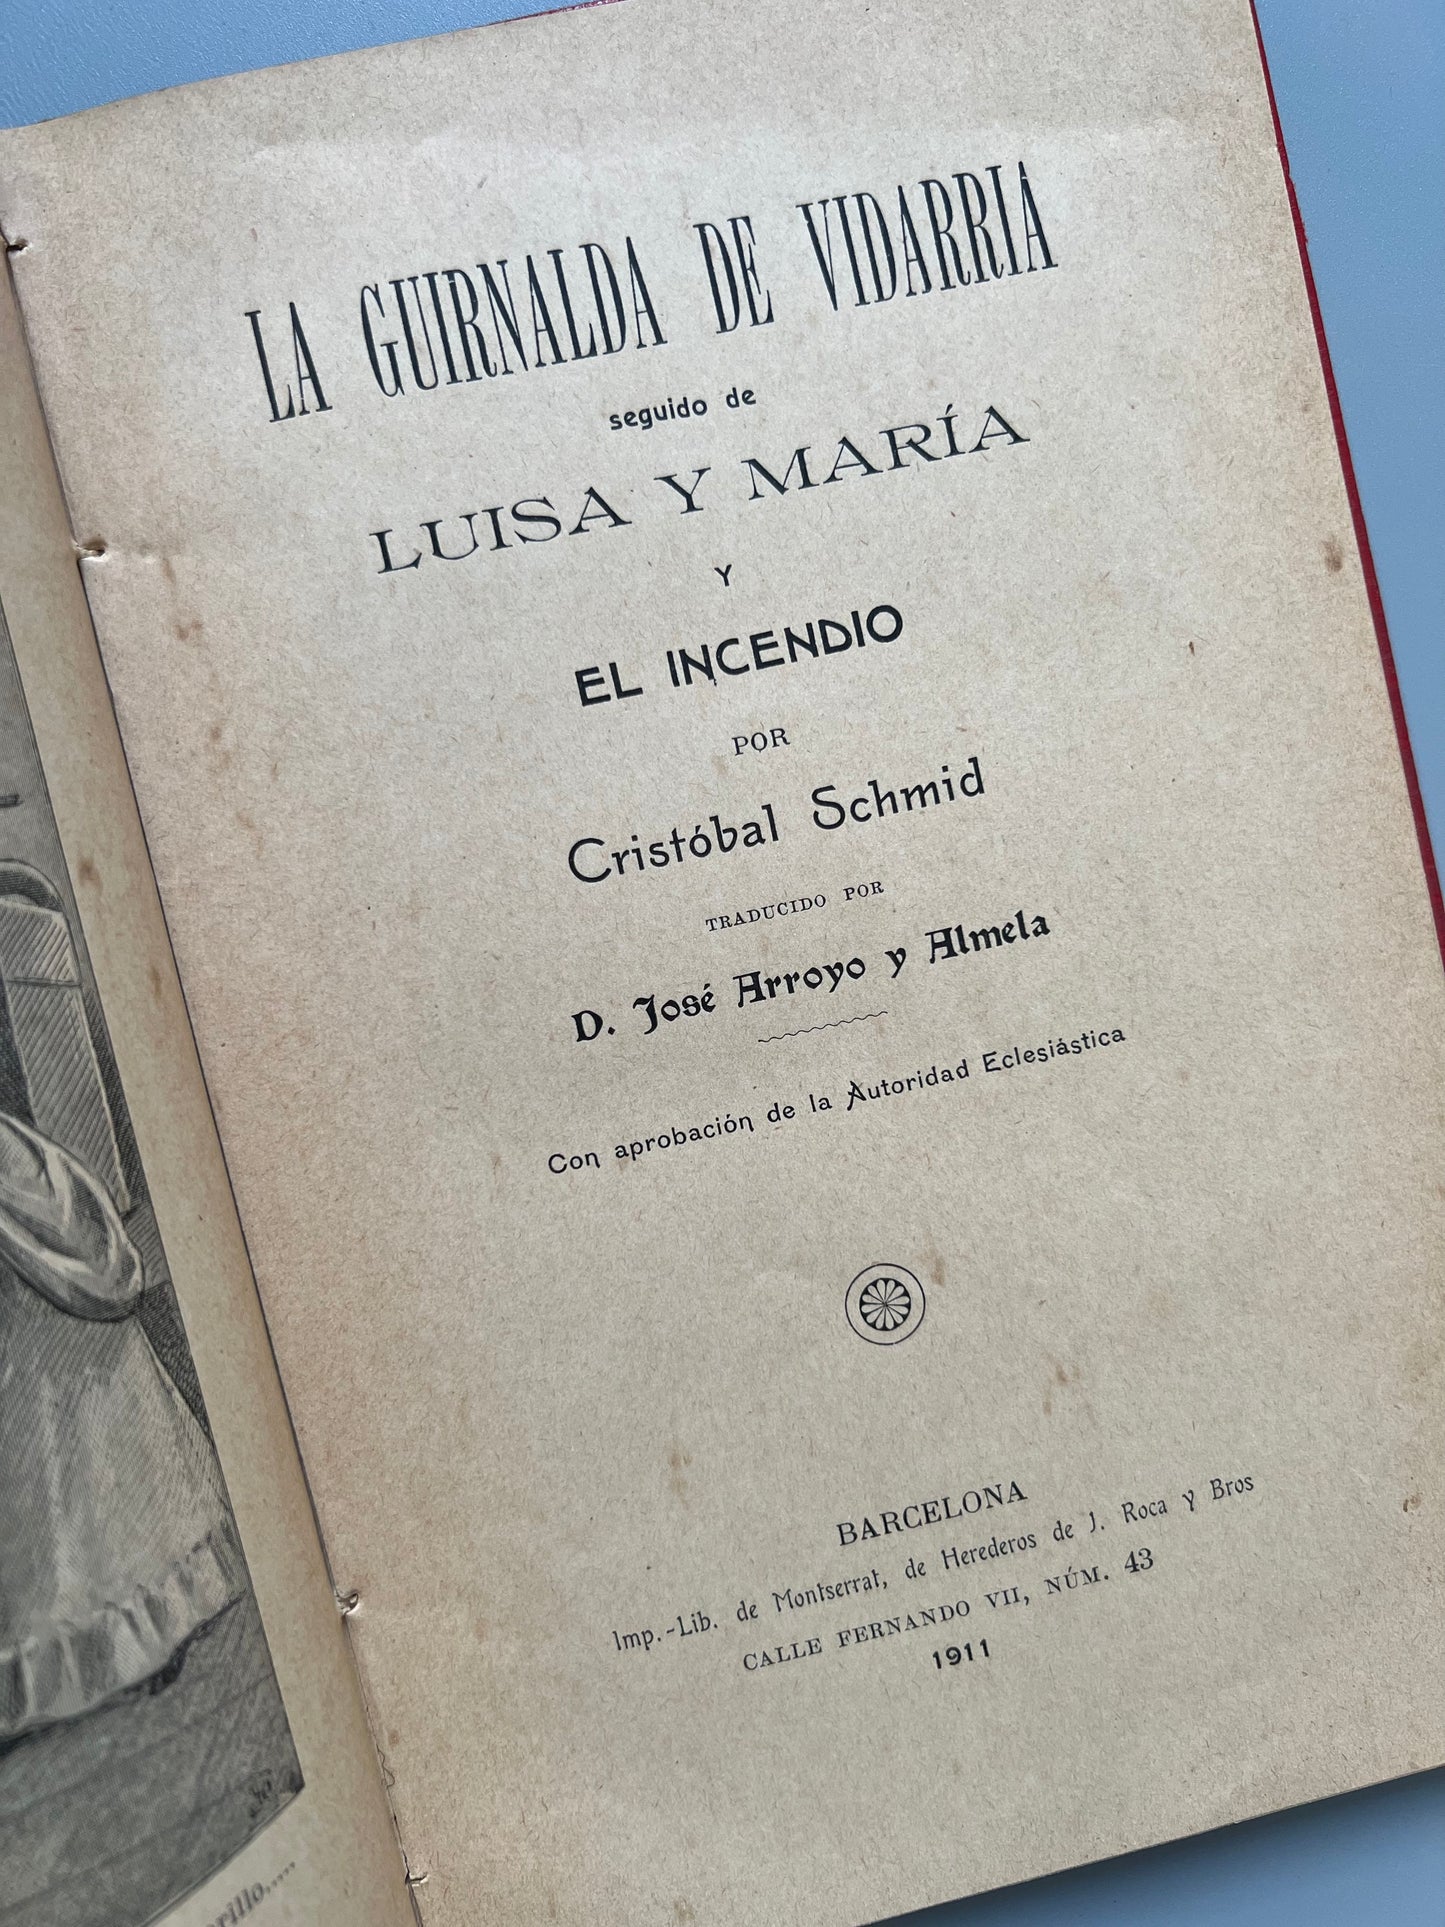 La guirnalda de vidarria, Cristóbal Schmid - Barcelona, 1911